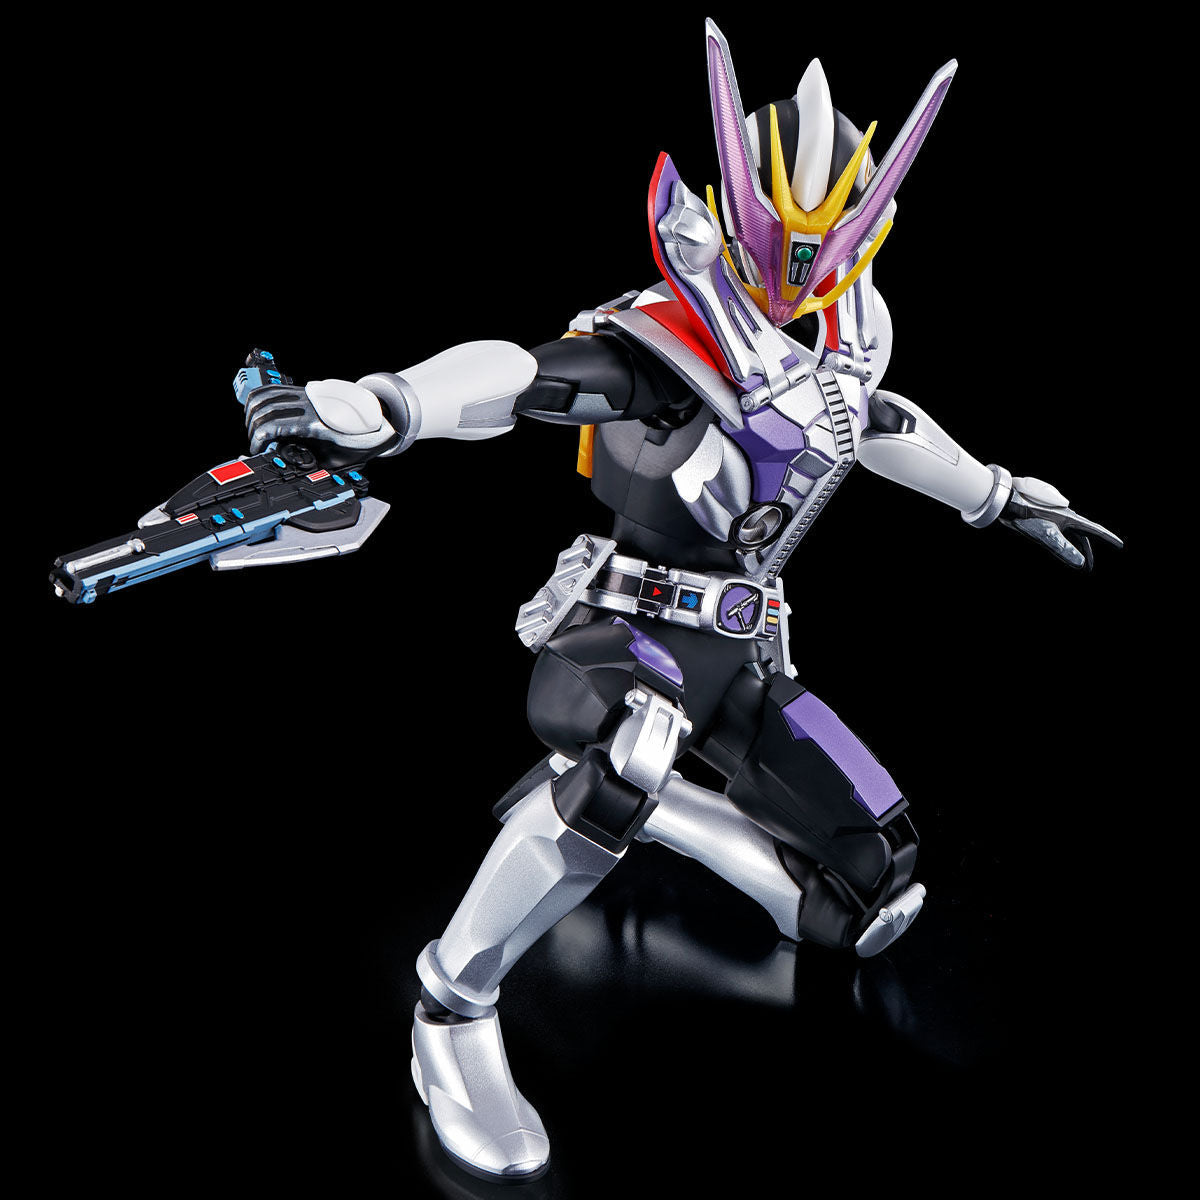 Kamen Rider Den-O Gun & Plat Form Figure Rise Standard